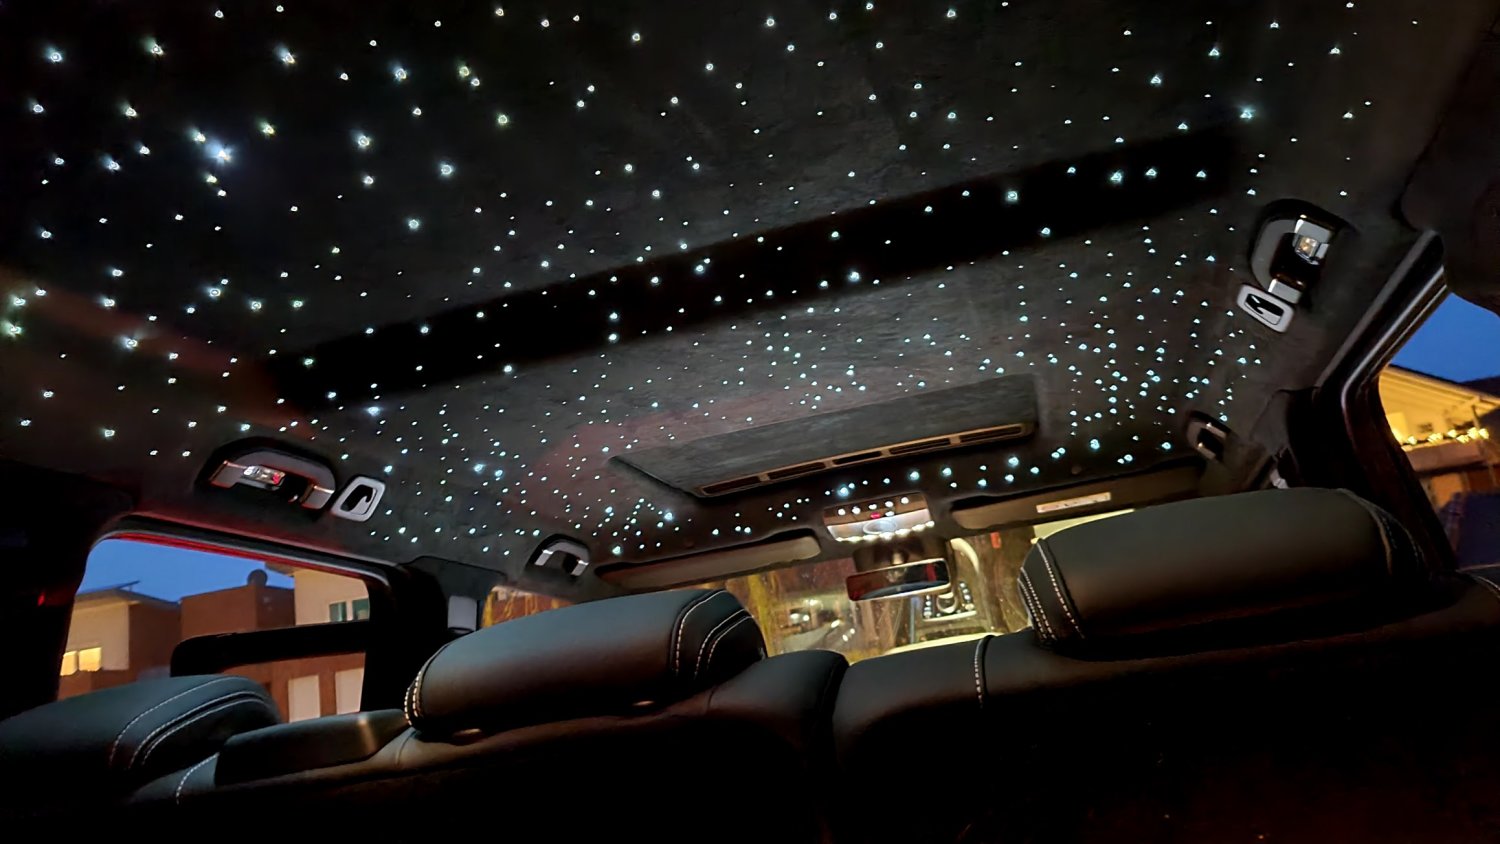 Auto Atmosphäre Licht Sternenhimmel Auto Dach Stern Licht Projektor @bugu